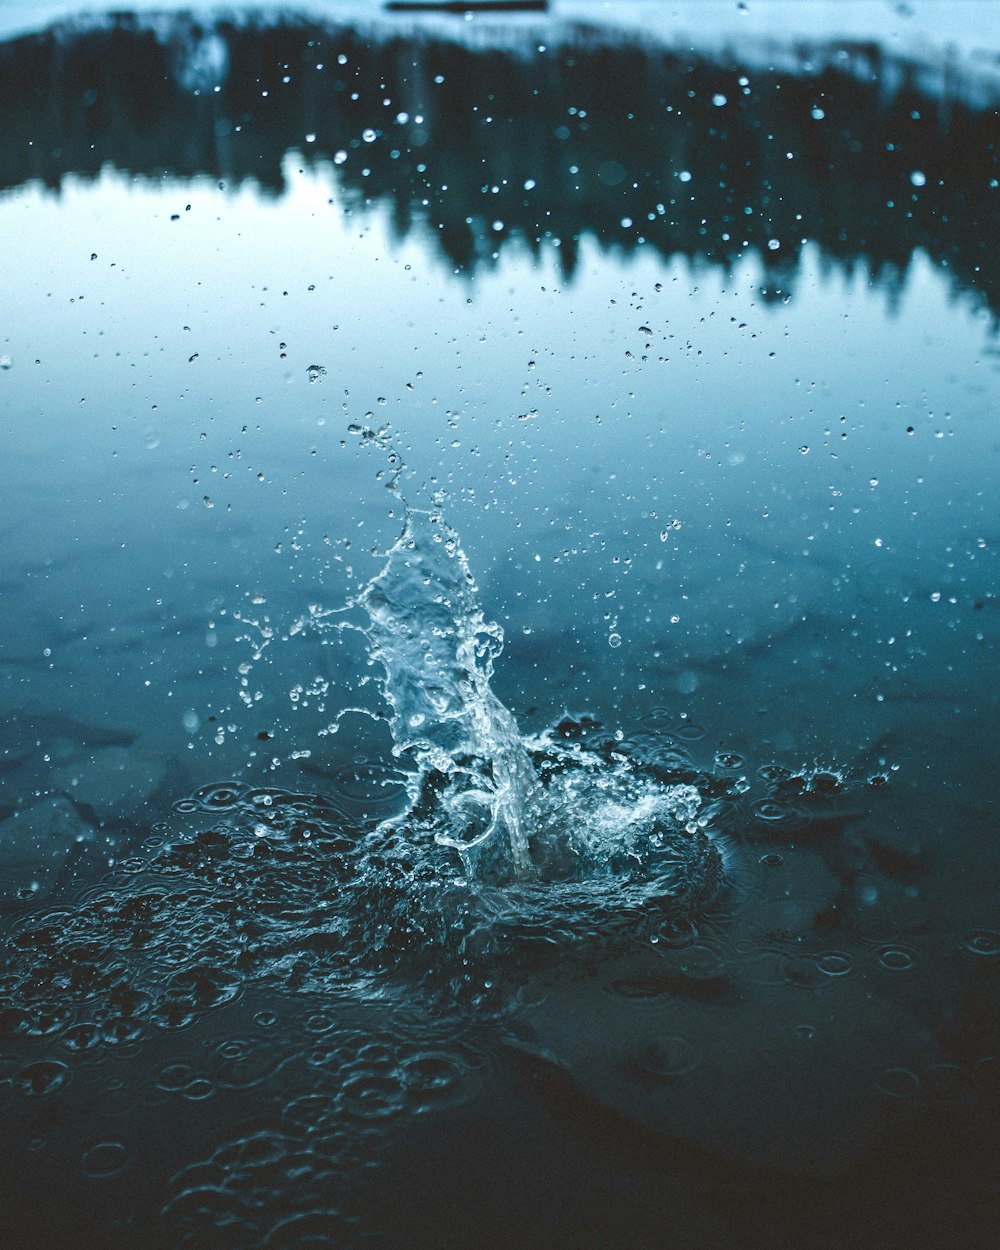 water splash on body of water during daytime